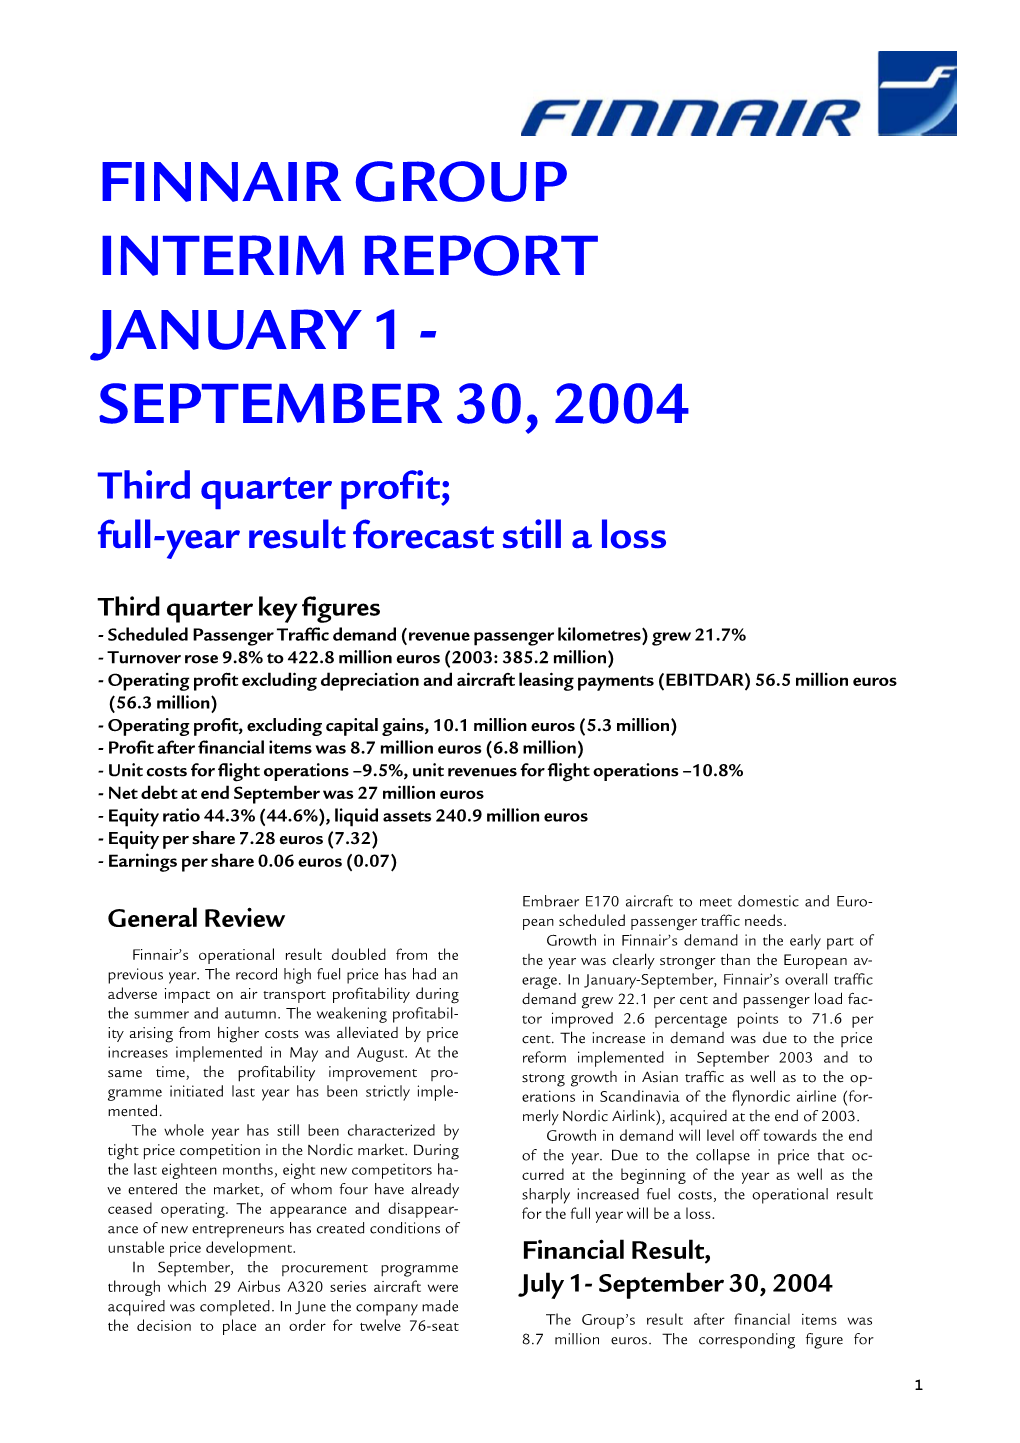 FINNAIR GROUP INTERIM REPORT JANUARY 1 - SEPTEMBER 30, 2004 Third Quarter Profit; Full-Year Result Forecast Still a Loss